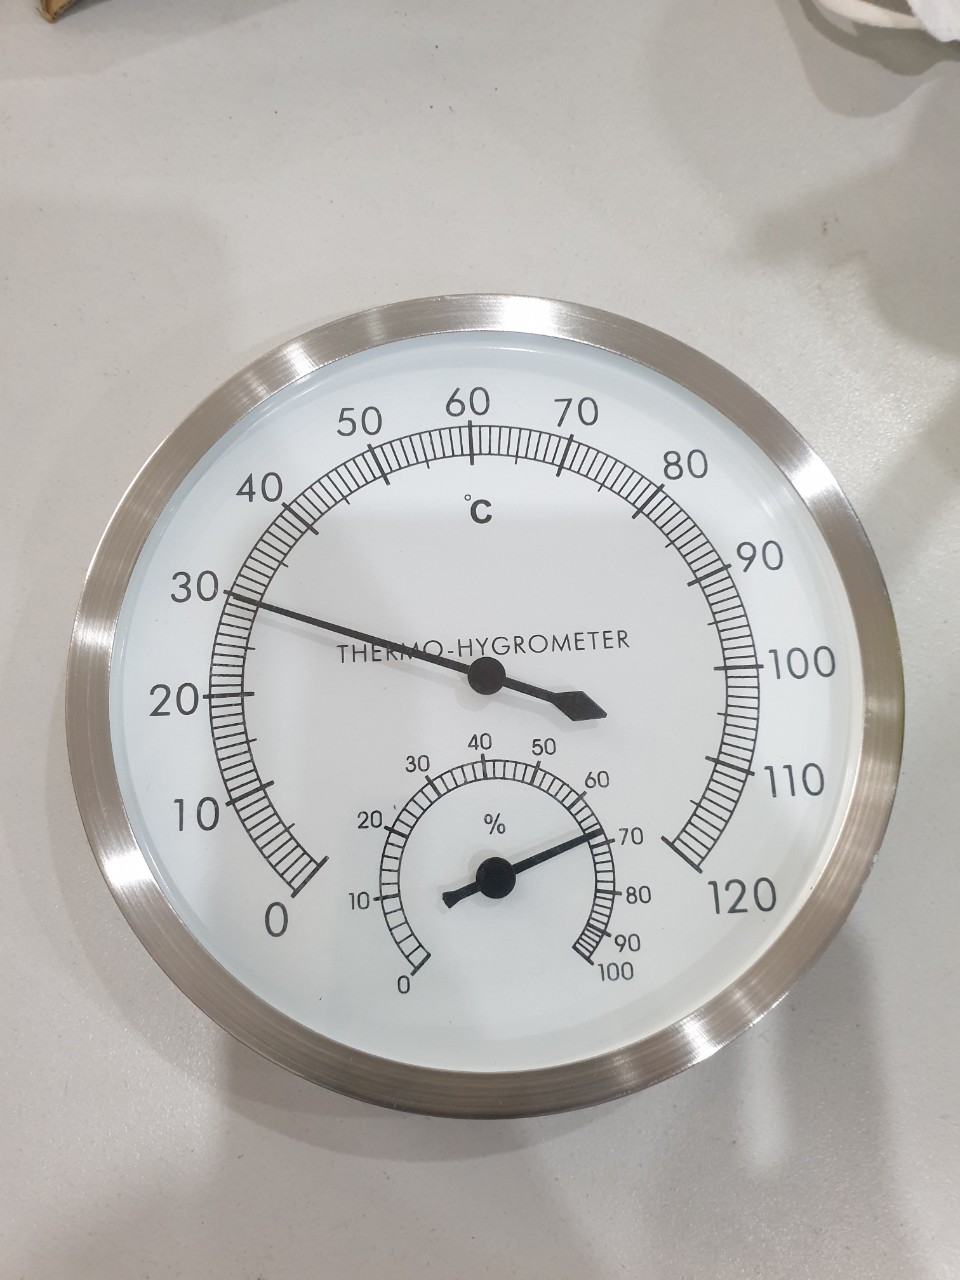 Đồng hồ chuyên dụng đo nhiệt độ và độ ẩm